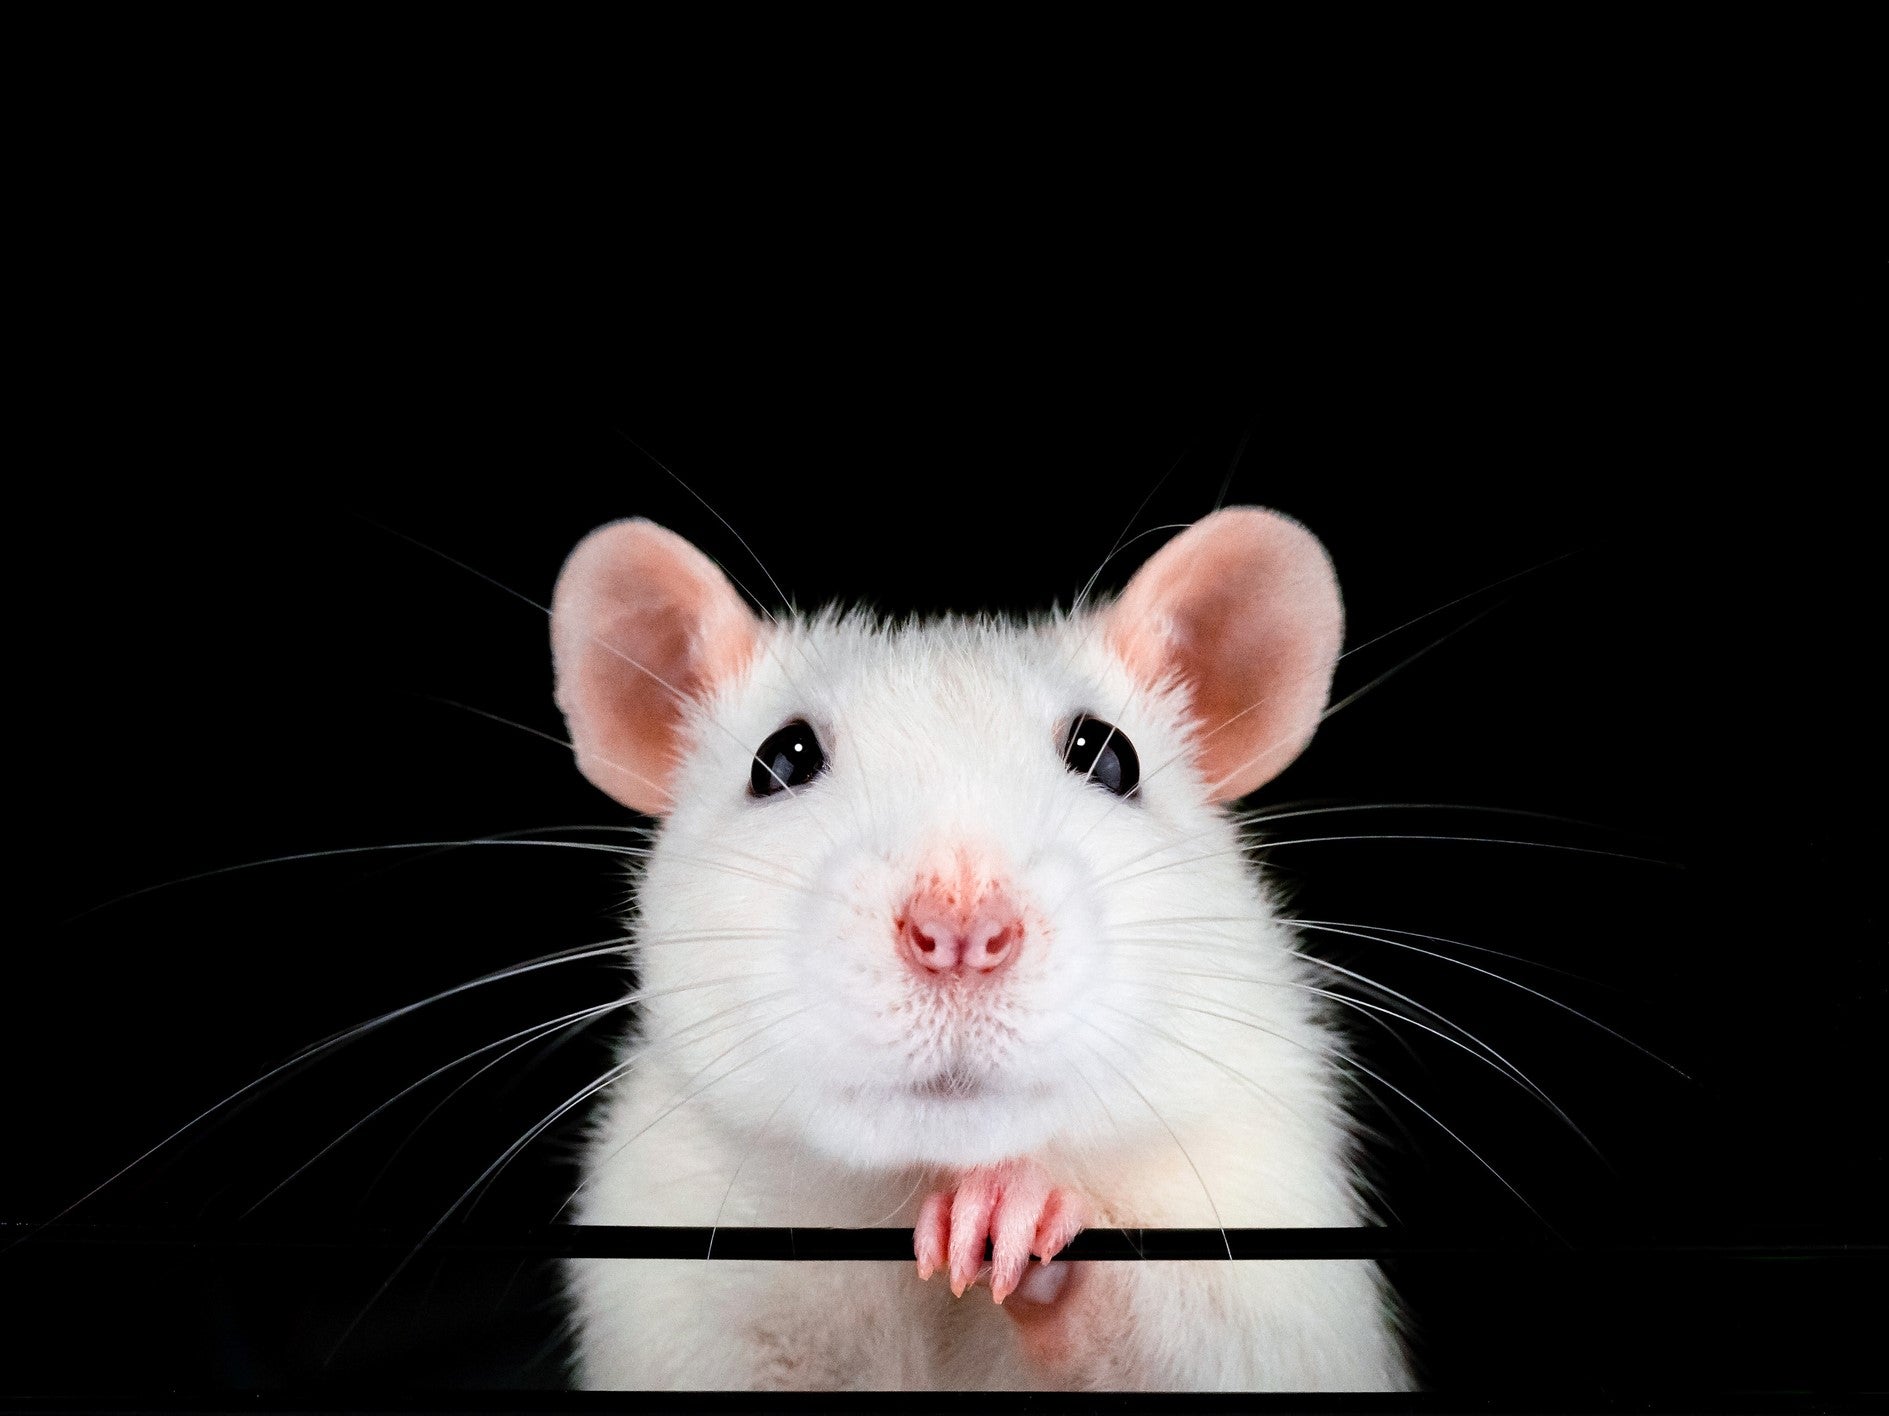 Los investigadores dicen que restauraron la visión en ratones viejos al invertir el reloj biológico